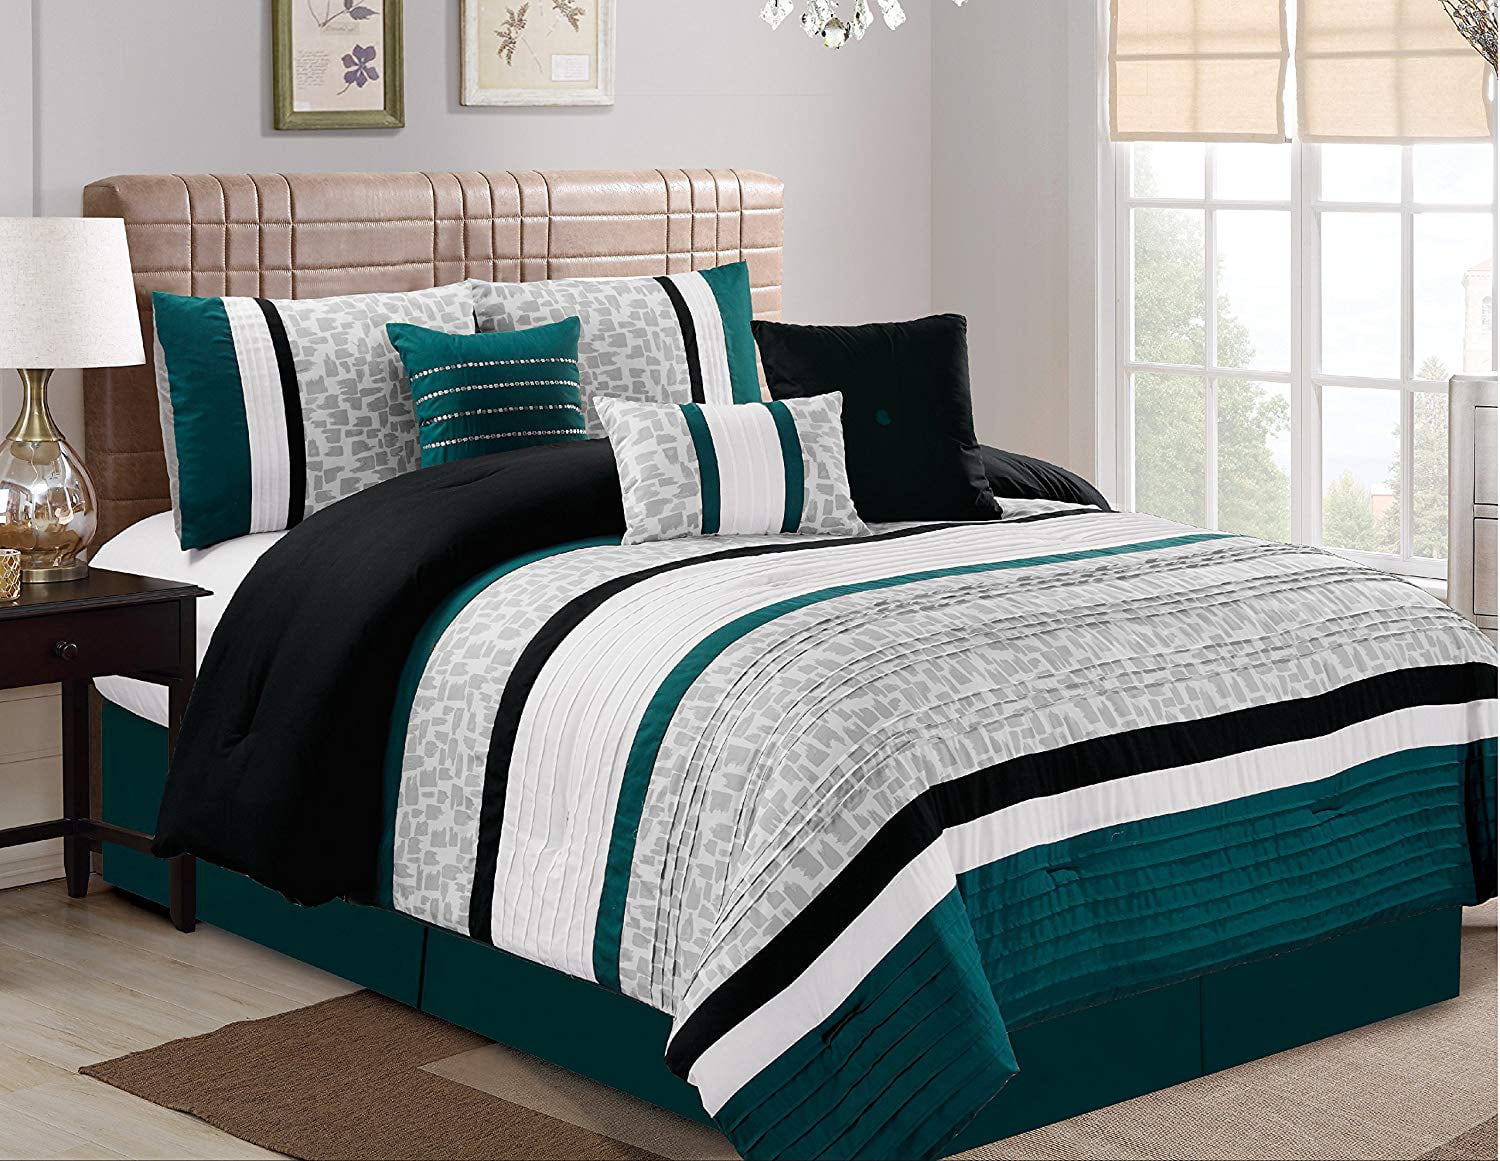 Hgmart Bedding Comforter Set 7 Piece, Oversized Comforters For King Size Beds